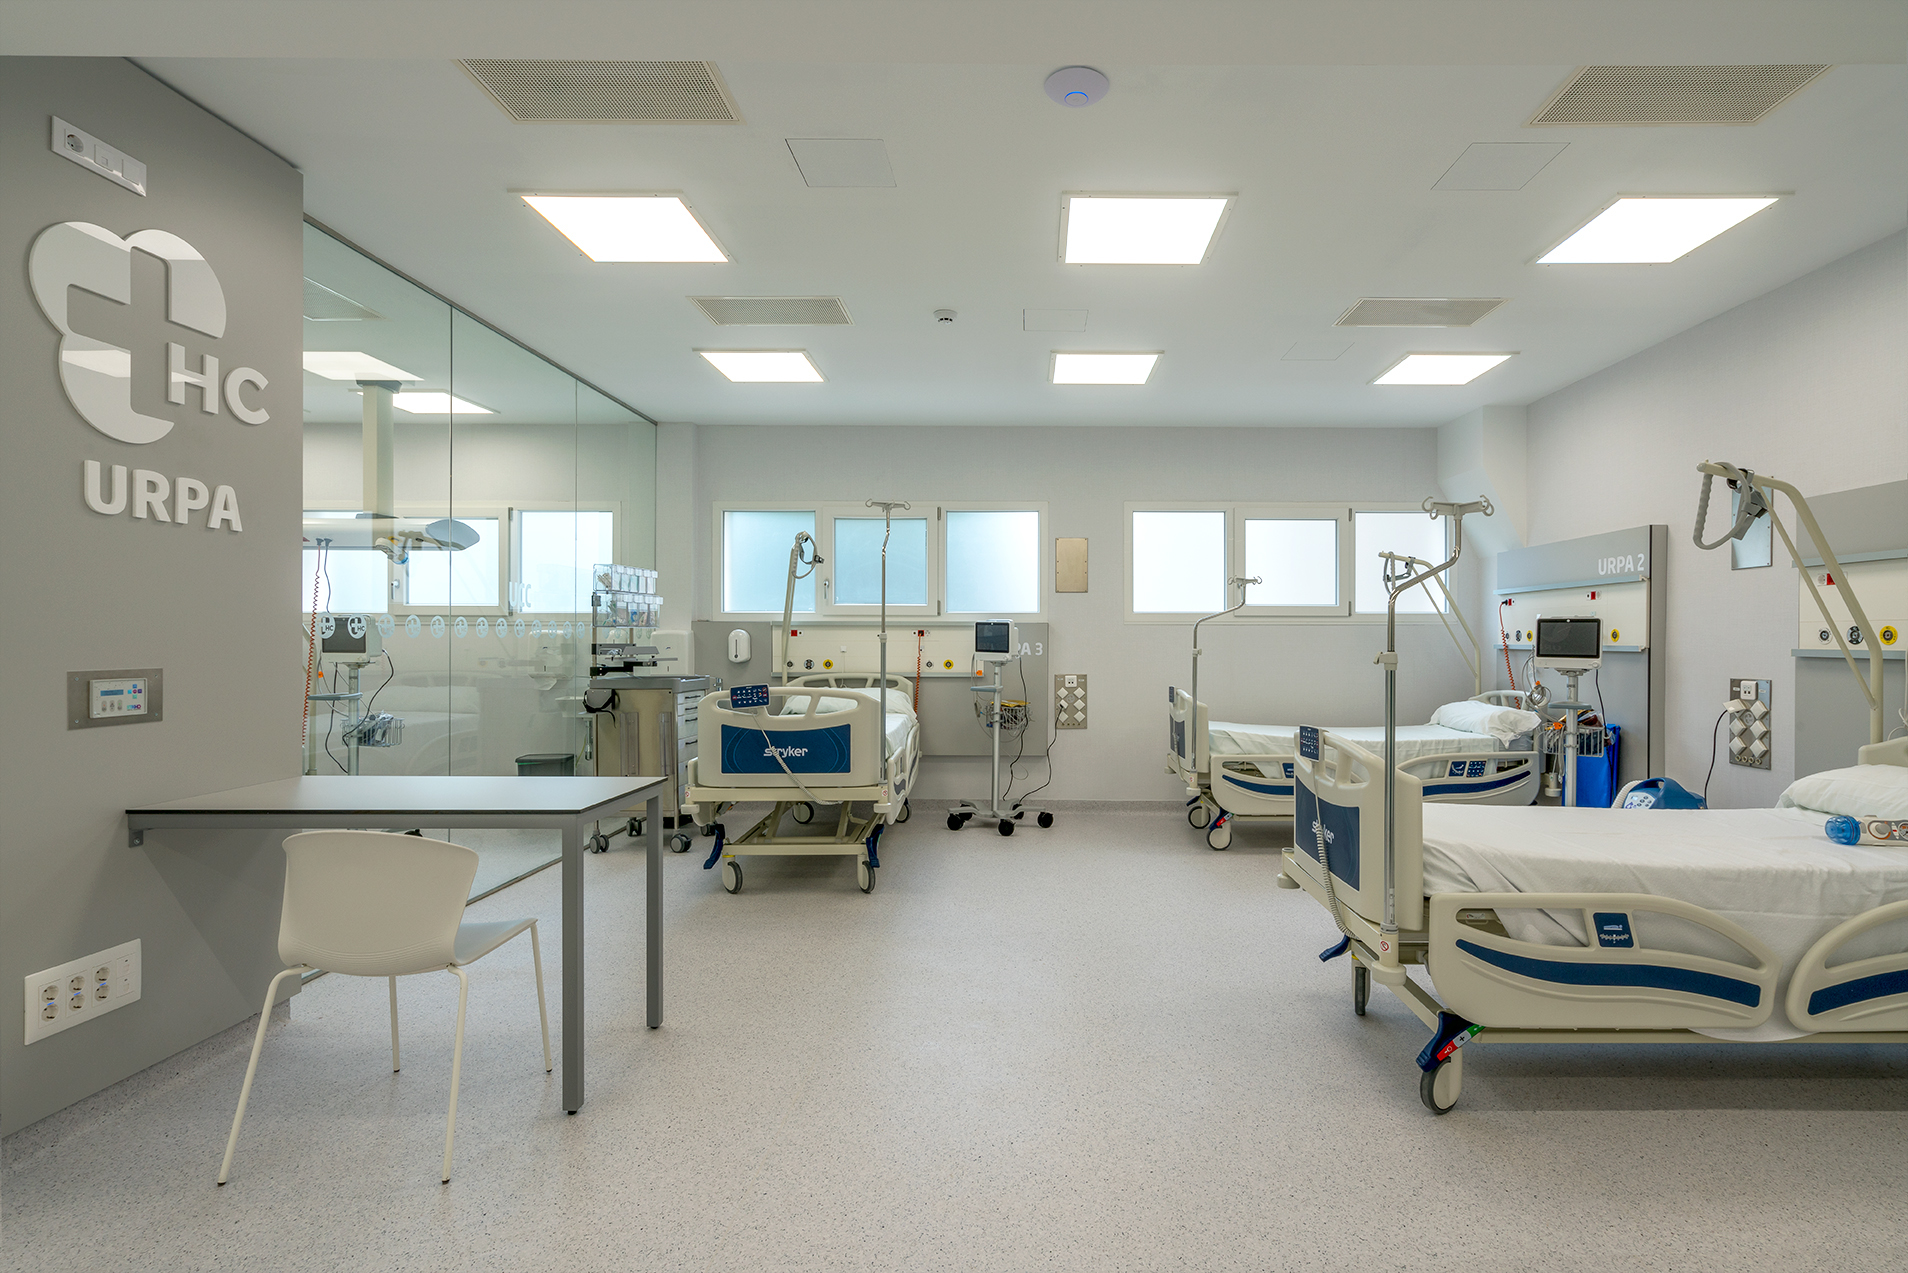 El Hospital Covadonga de Gijón concluye la reforma de su bloque quirúrgico, que ha supuesto una inversión de 1M